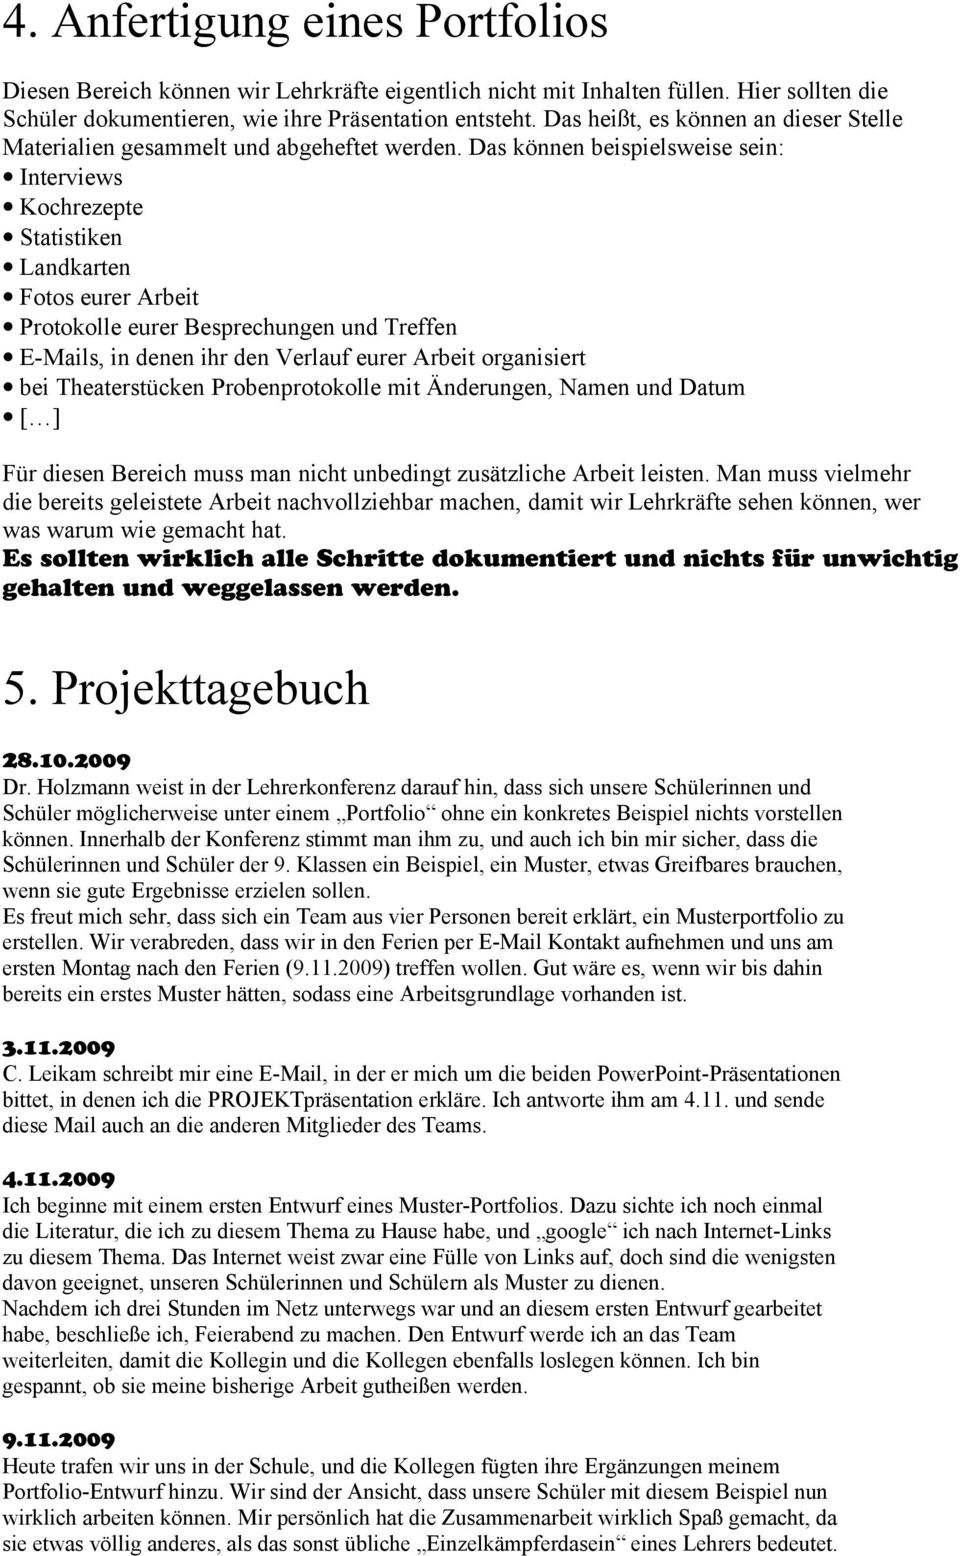 Portfolio Von Paul May Peter Henlein Realschule Pommernstrasse Nurnberg Pdf Kostenfreier Download